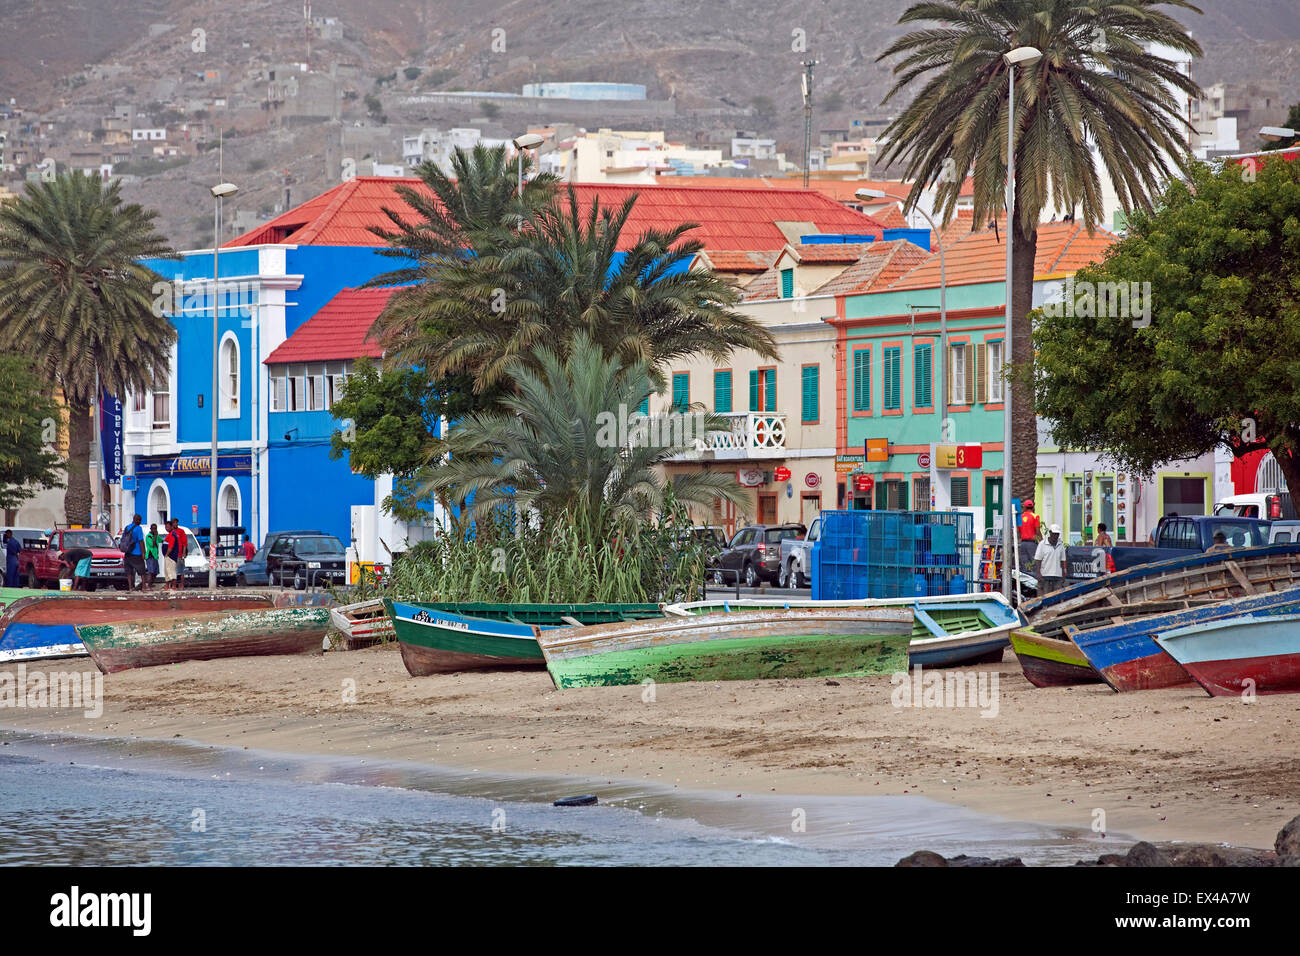 Angelboote/Fischerboote am Strand entlang der alten kolonialen Altstadt der Stadt Mindelo auf São Vicente, Kap Verde, Afrika Stockfoto